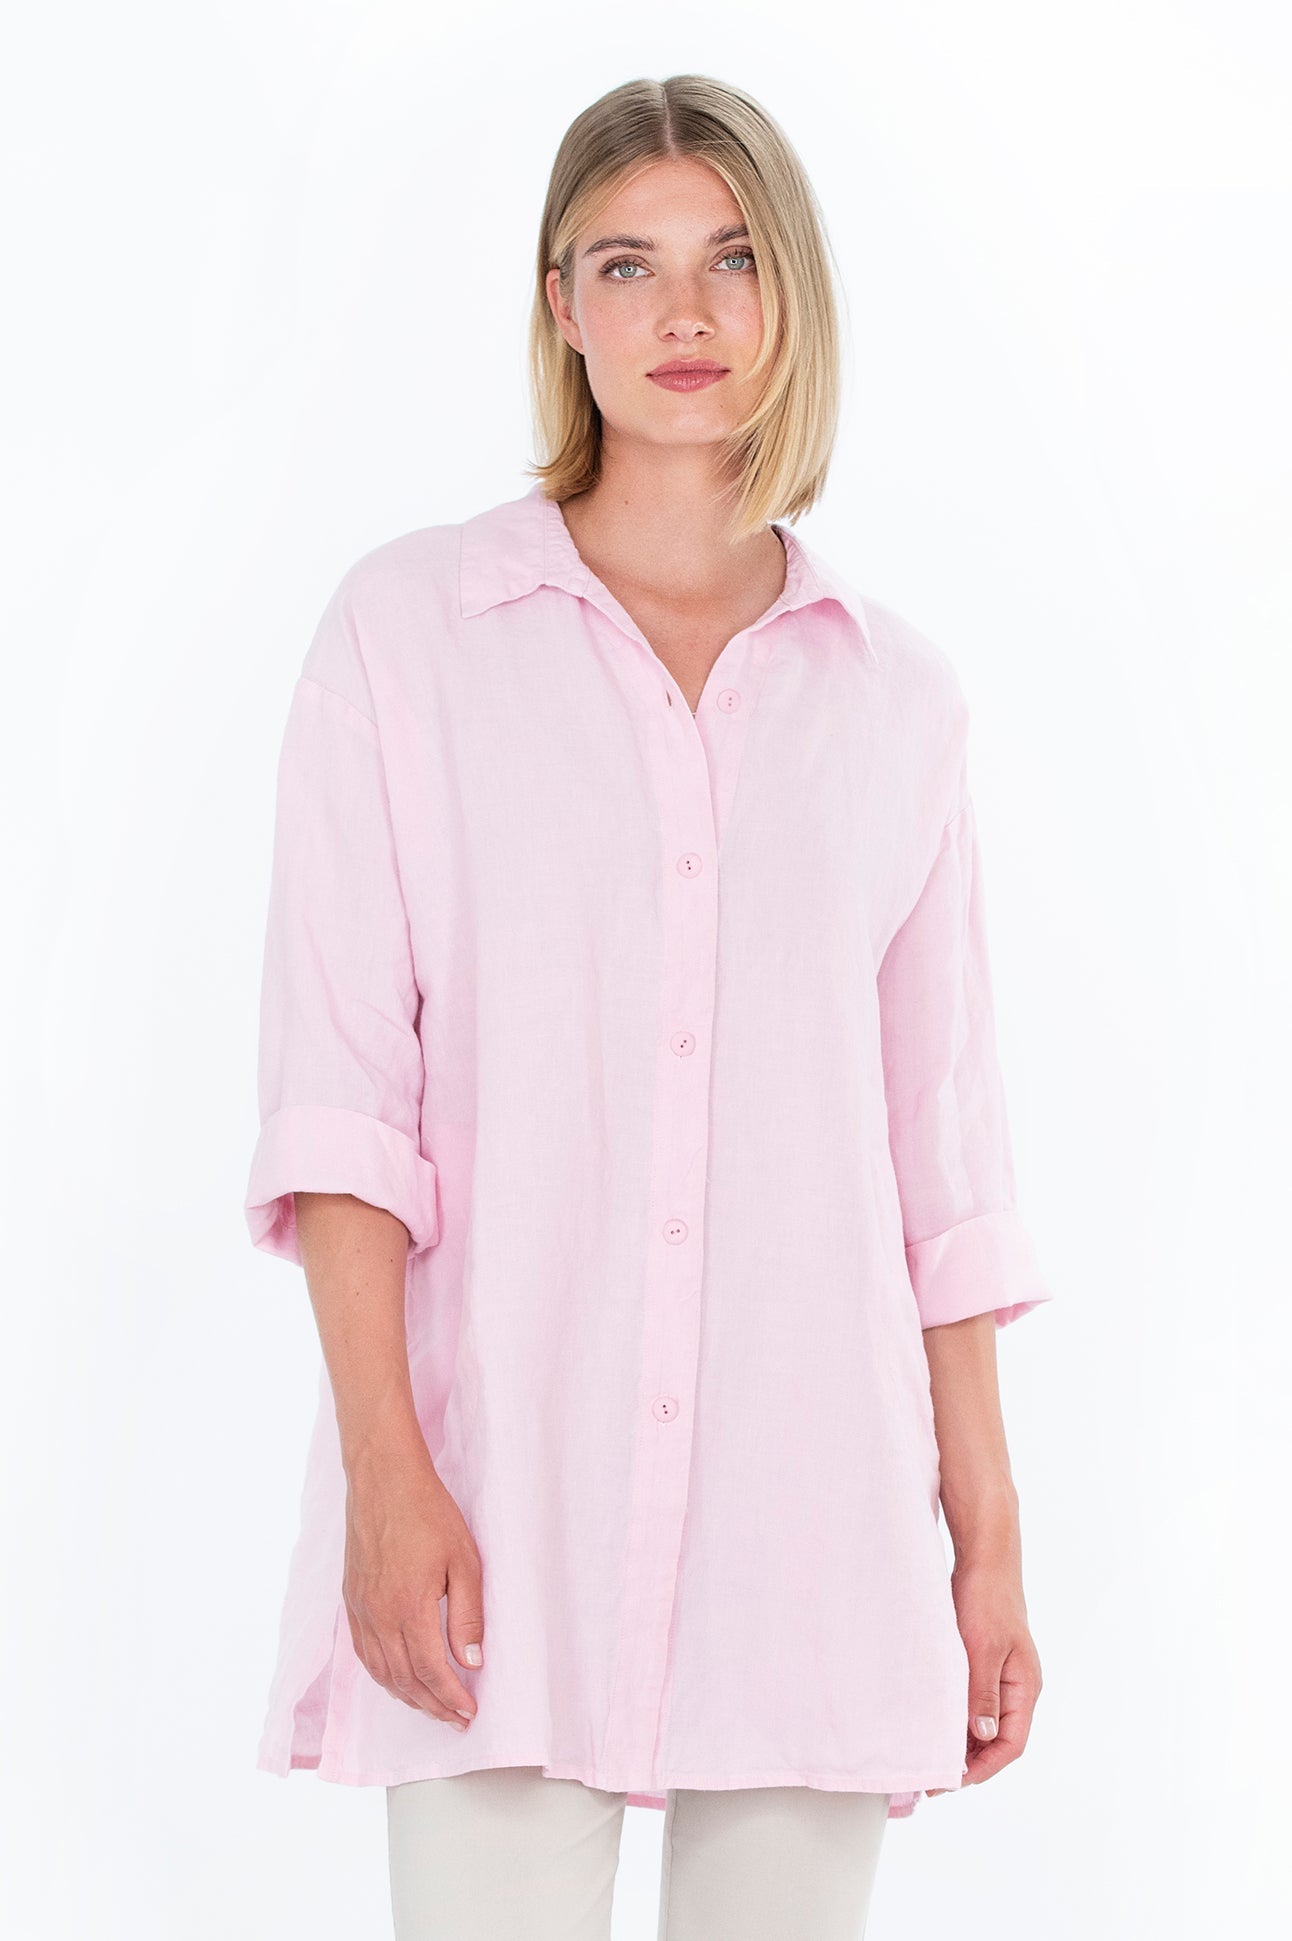 HEINÄ shirt light pink